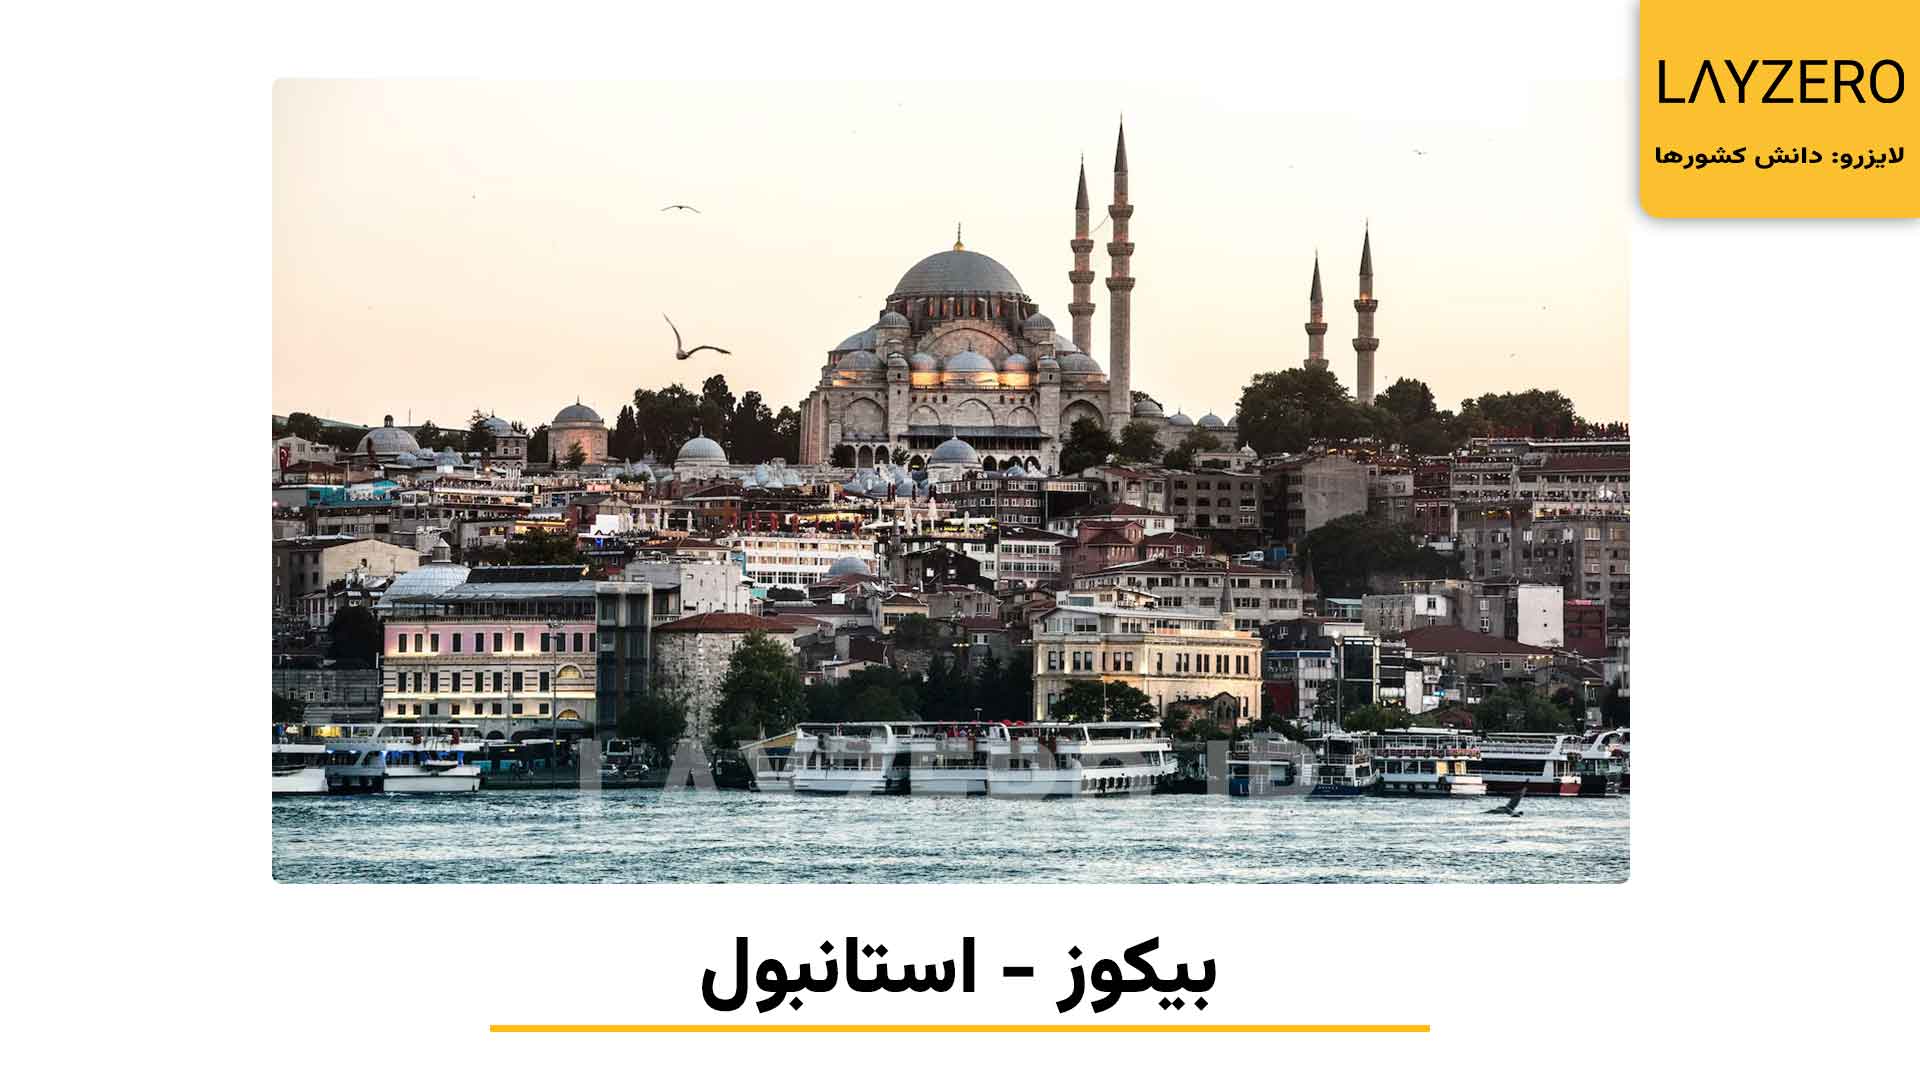 معرفی 8 محله معروف استانبول در ترکیه | لایزرو دانش کشورها و مهاجرت